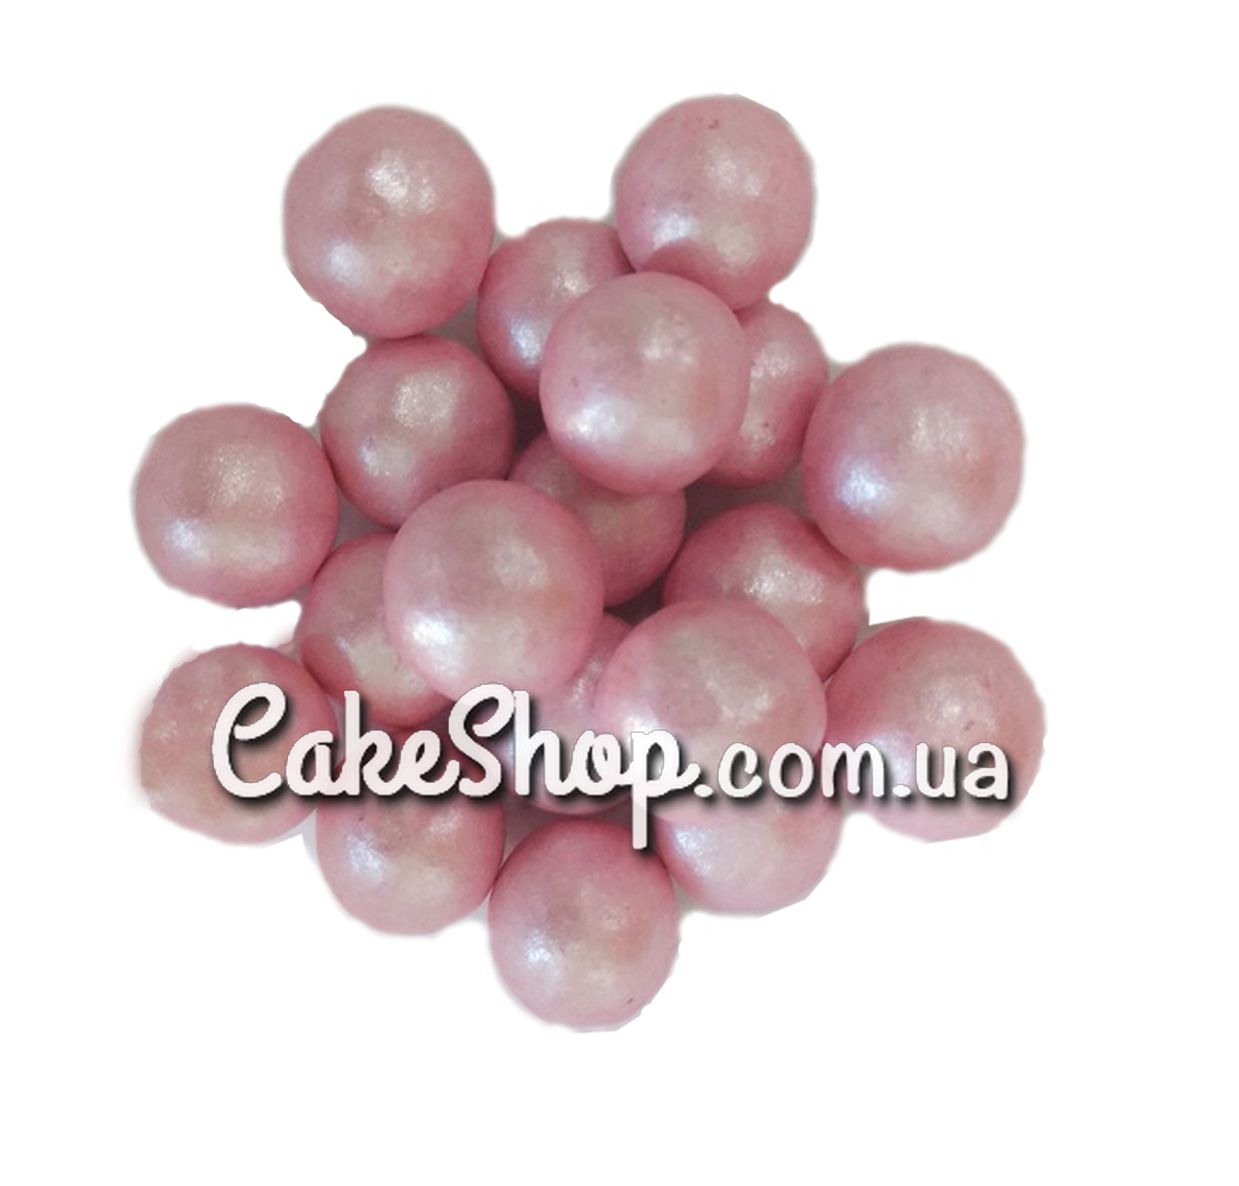 ⋗ Жемчуг сахарный Розовый 20 мм, 50 г купить в Украине ➛ CakeShop.com.ua, фото